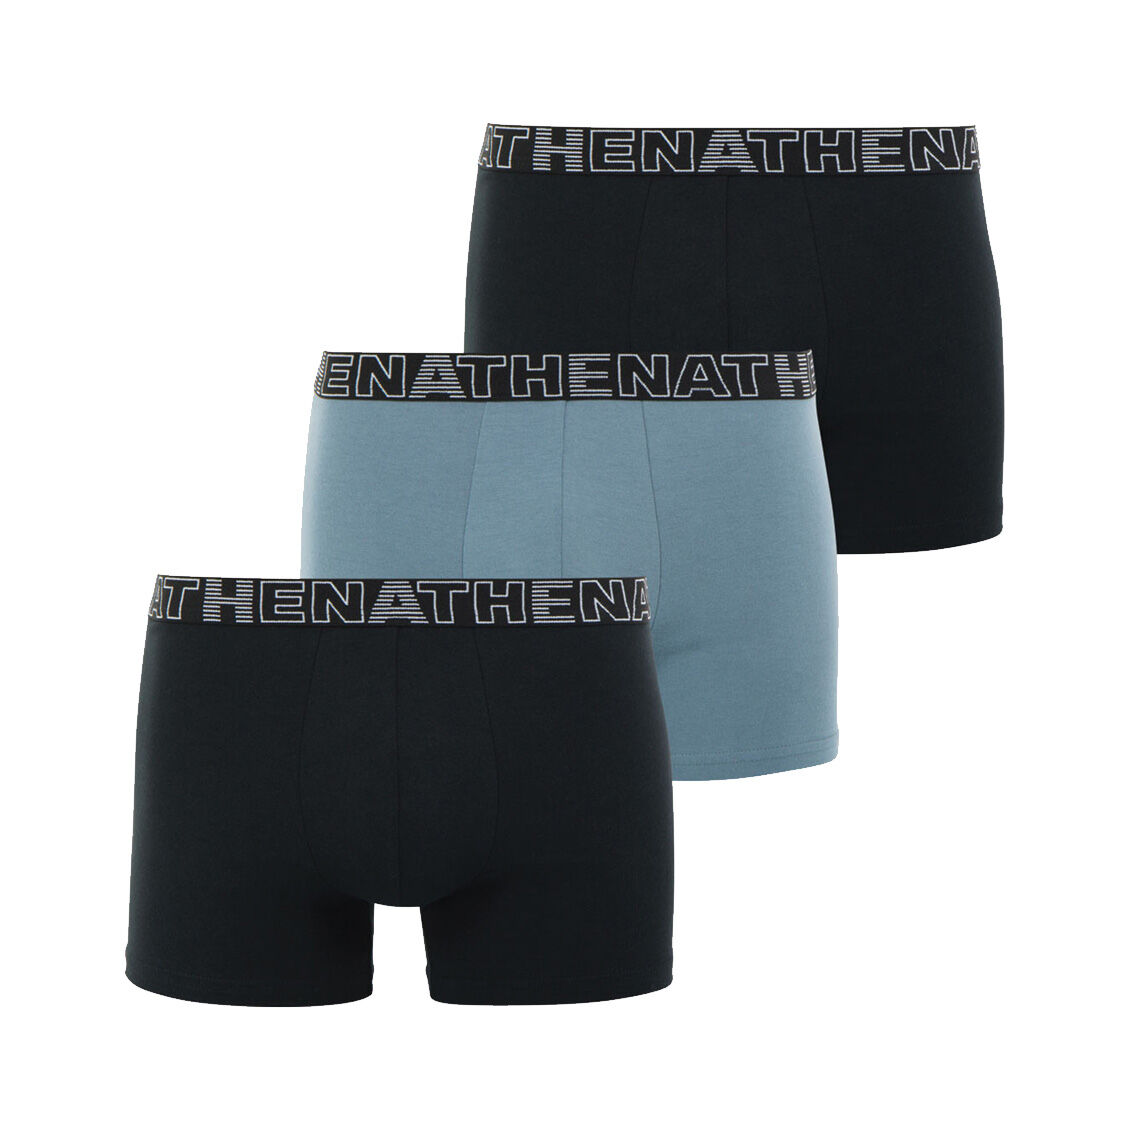 Athena Lot de 3 boxers Athena en coton stretch noir et gris - NOIR GRIS - XL